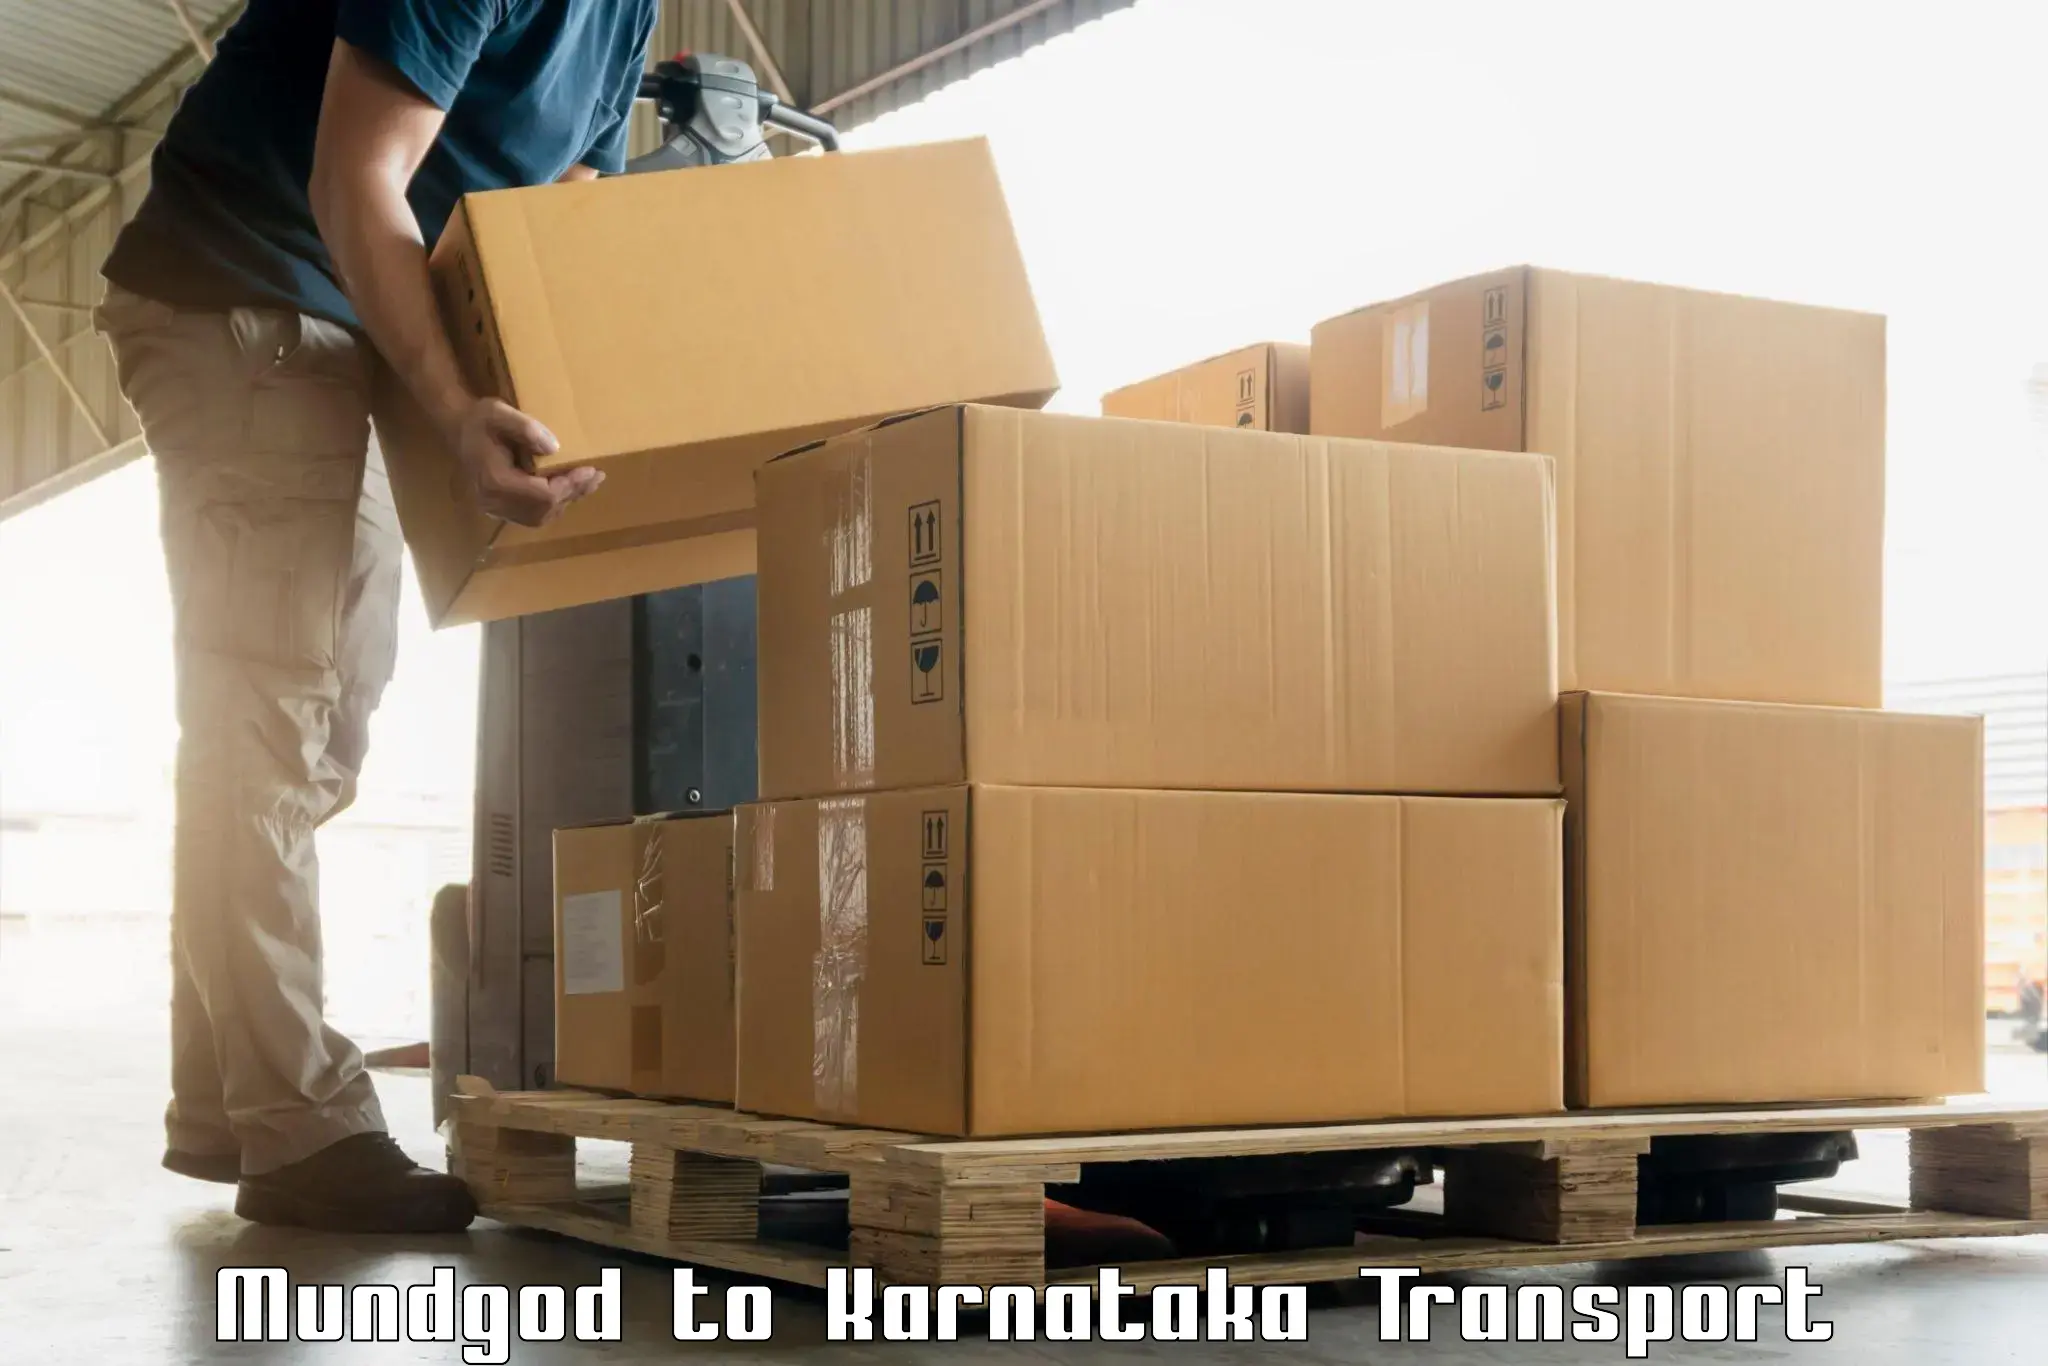 Container transport service Mundgod to Manvi